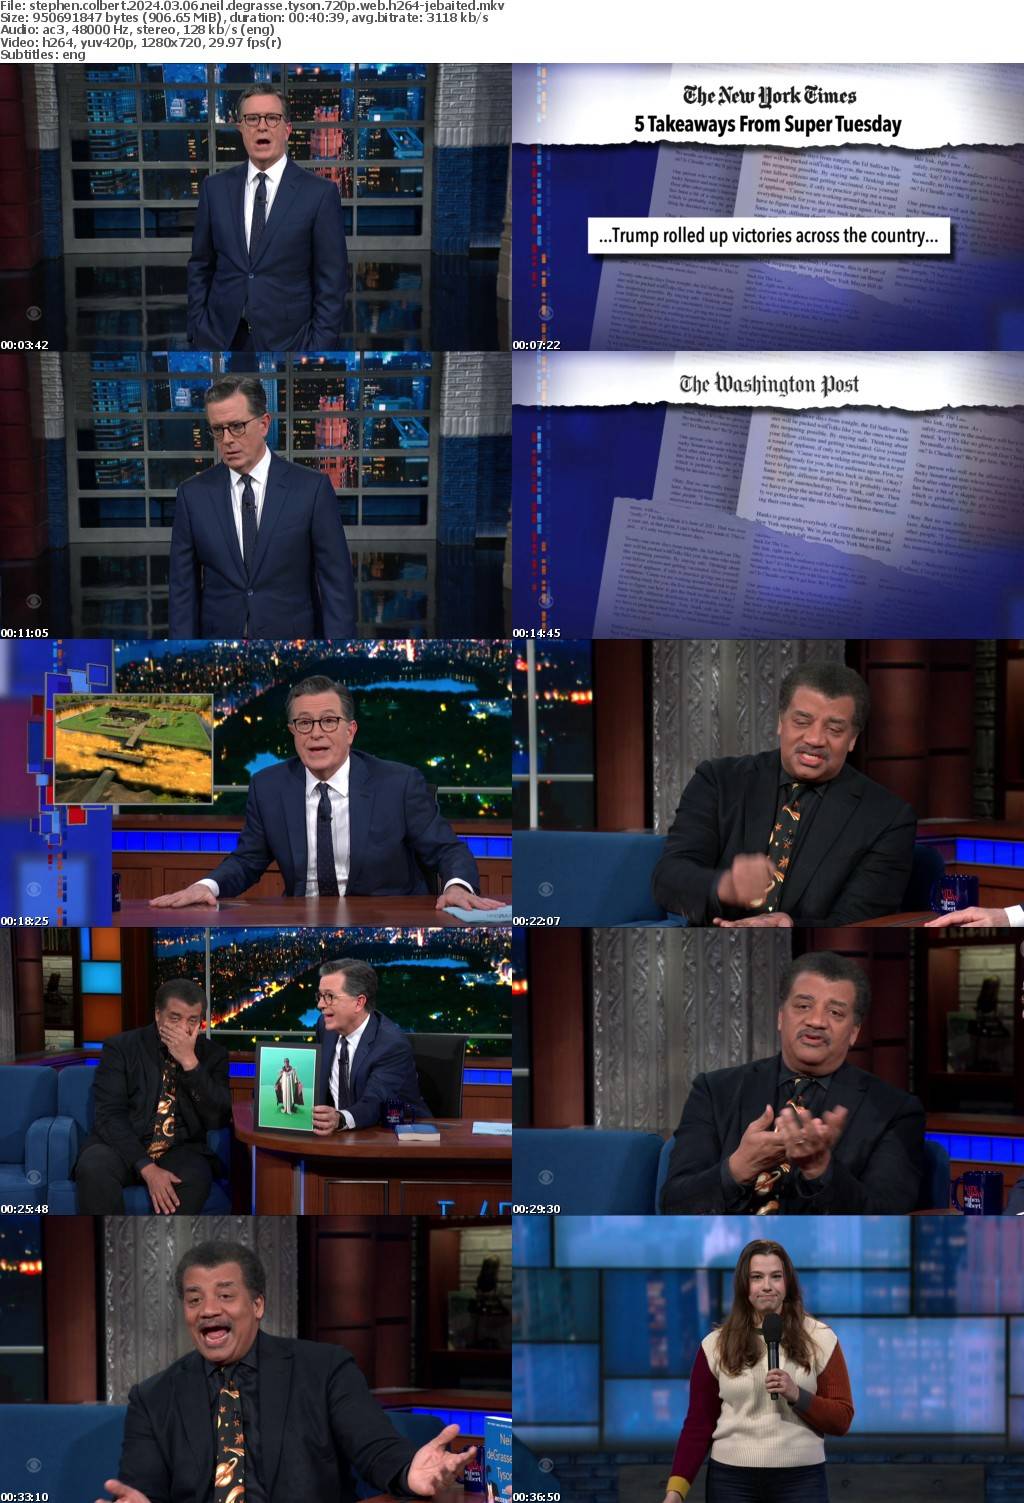 Stephen Colbert 2024 03 06 Neil deGrasse Tyson 720p WEB H264-JEBAITED